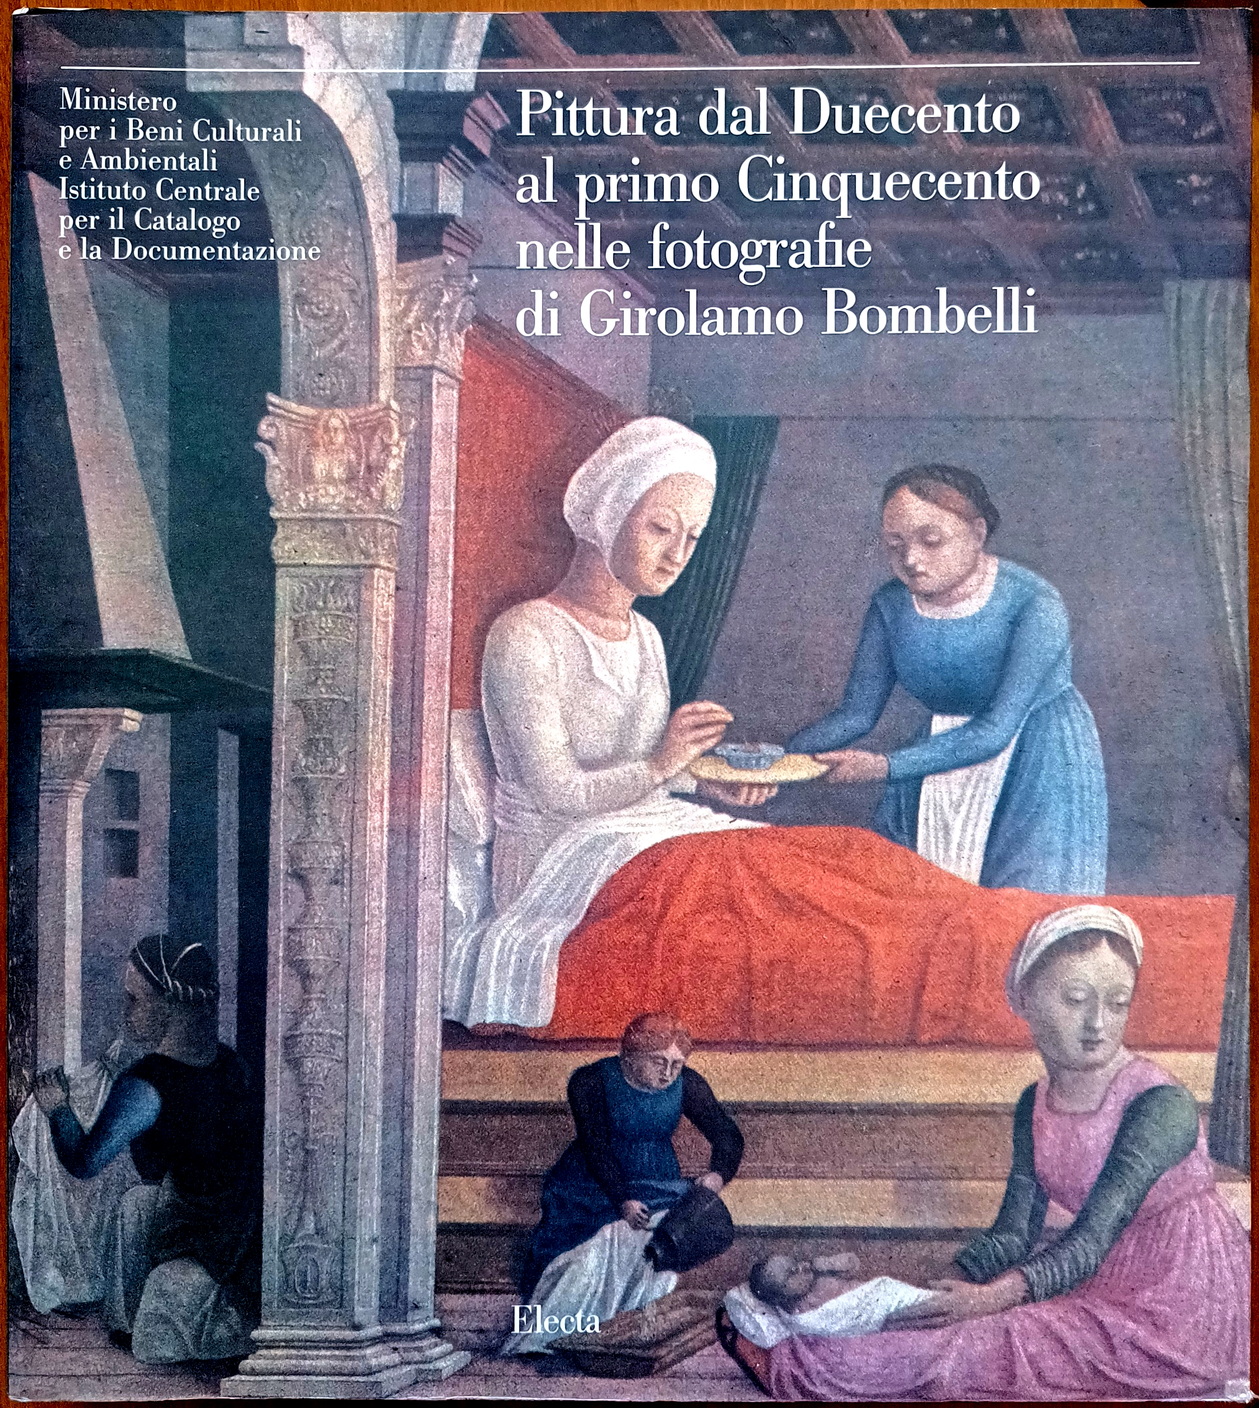 Walter Angelelli e Andrea De Marchi, Pittura dal Duecento al primo Cinquecento nelle fotografie di Girolamo Bombelli, Ed. Electa, 1991